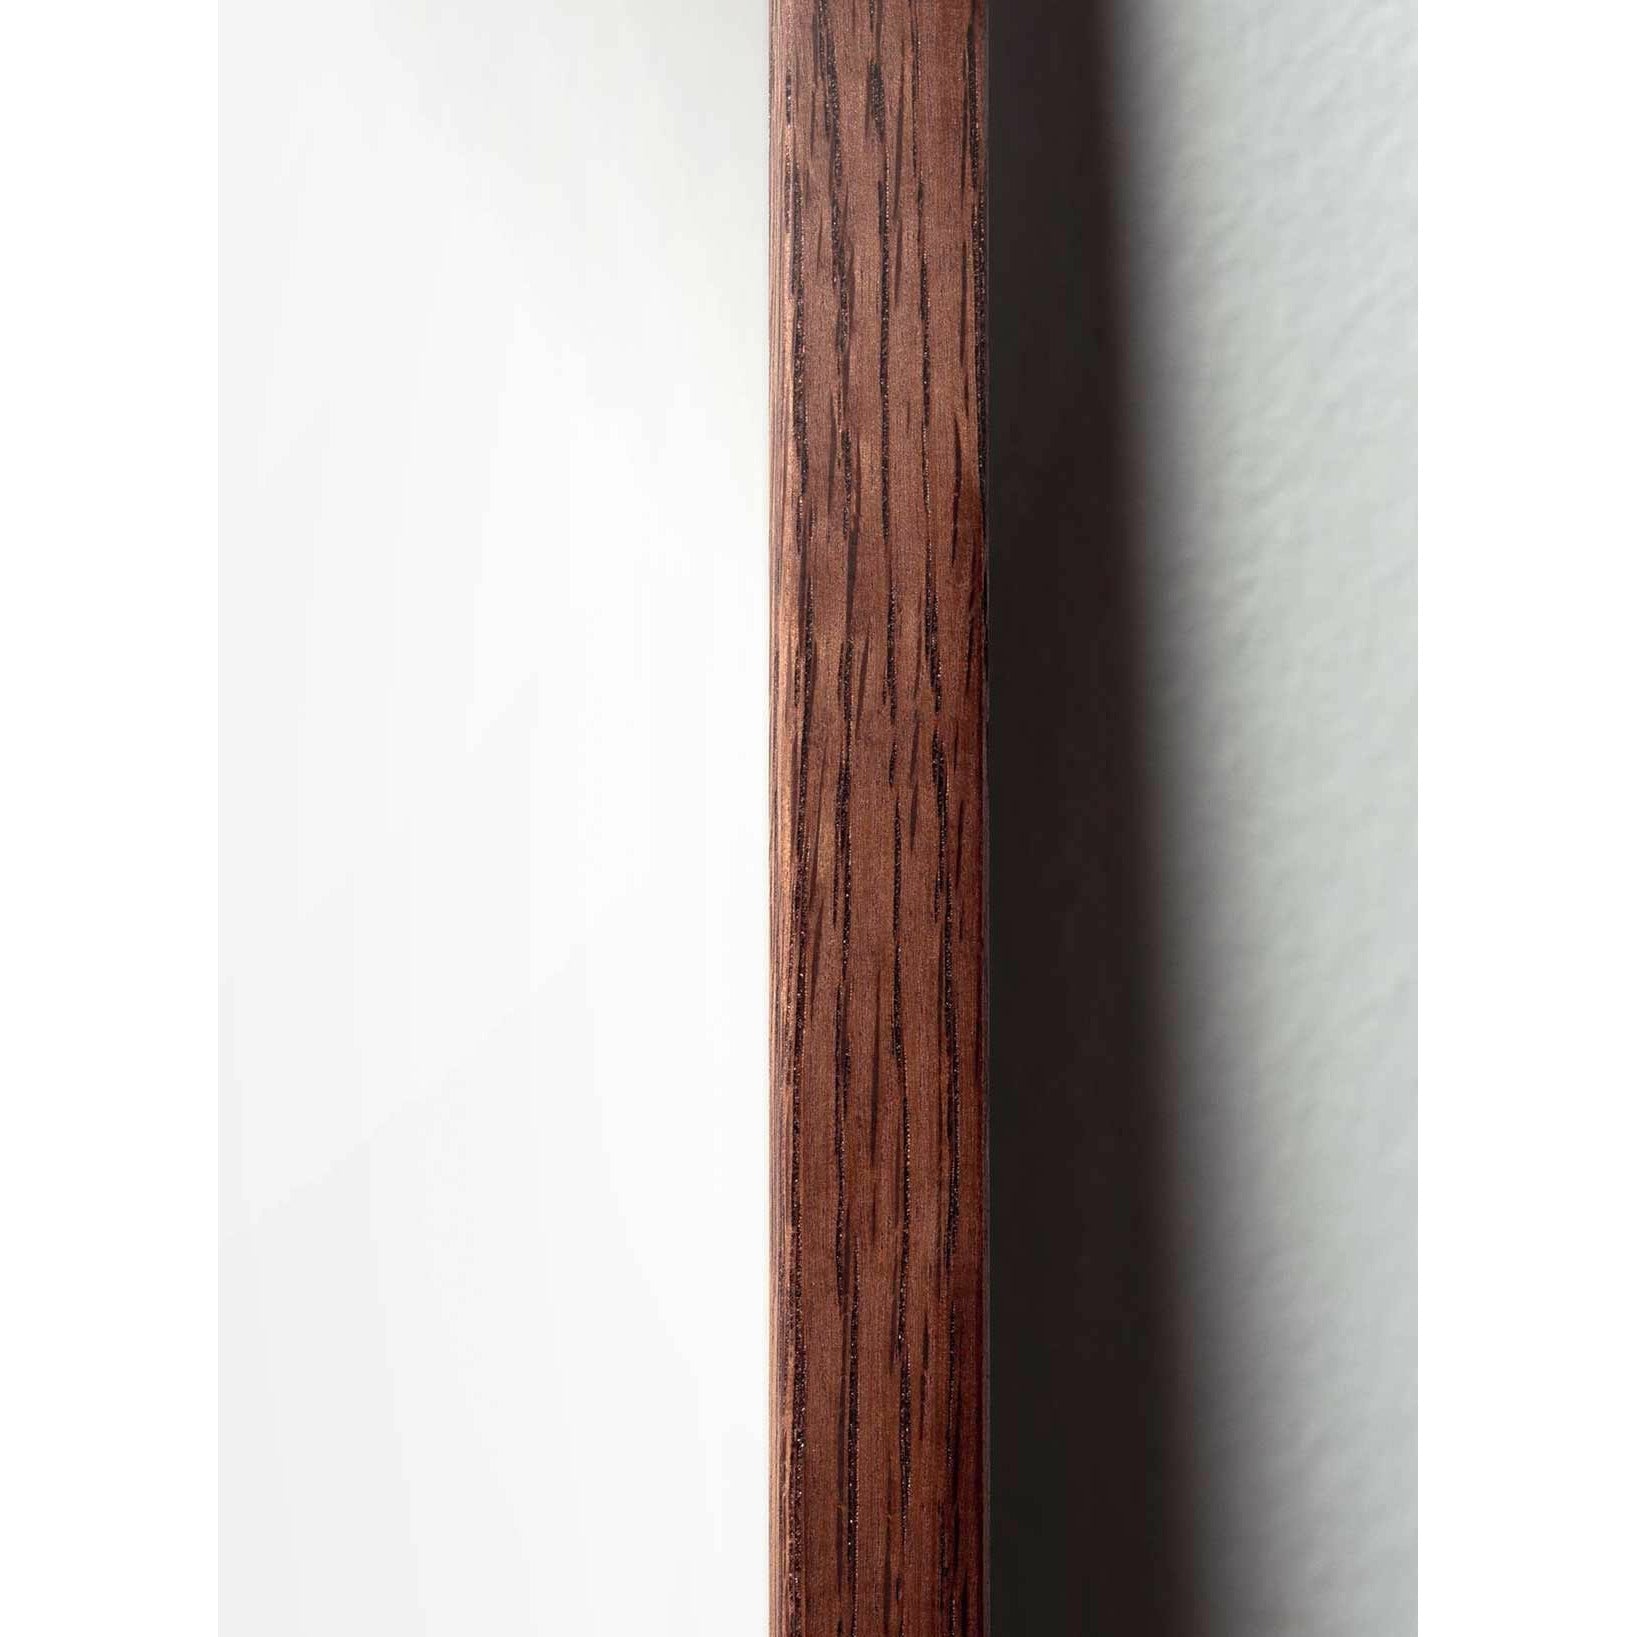 Póster clásico de cono de pino de creación, marco de madera oscura 70 x100 cm, fondo amarillo